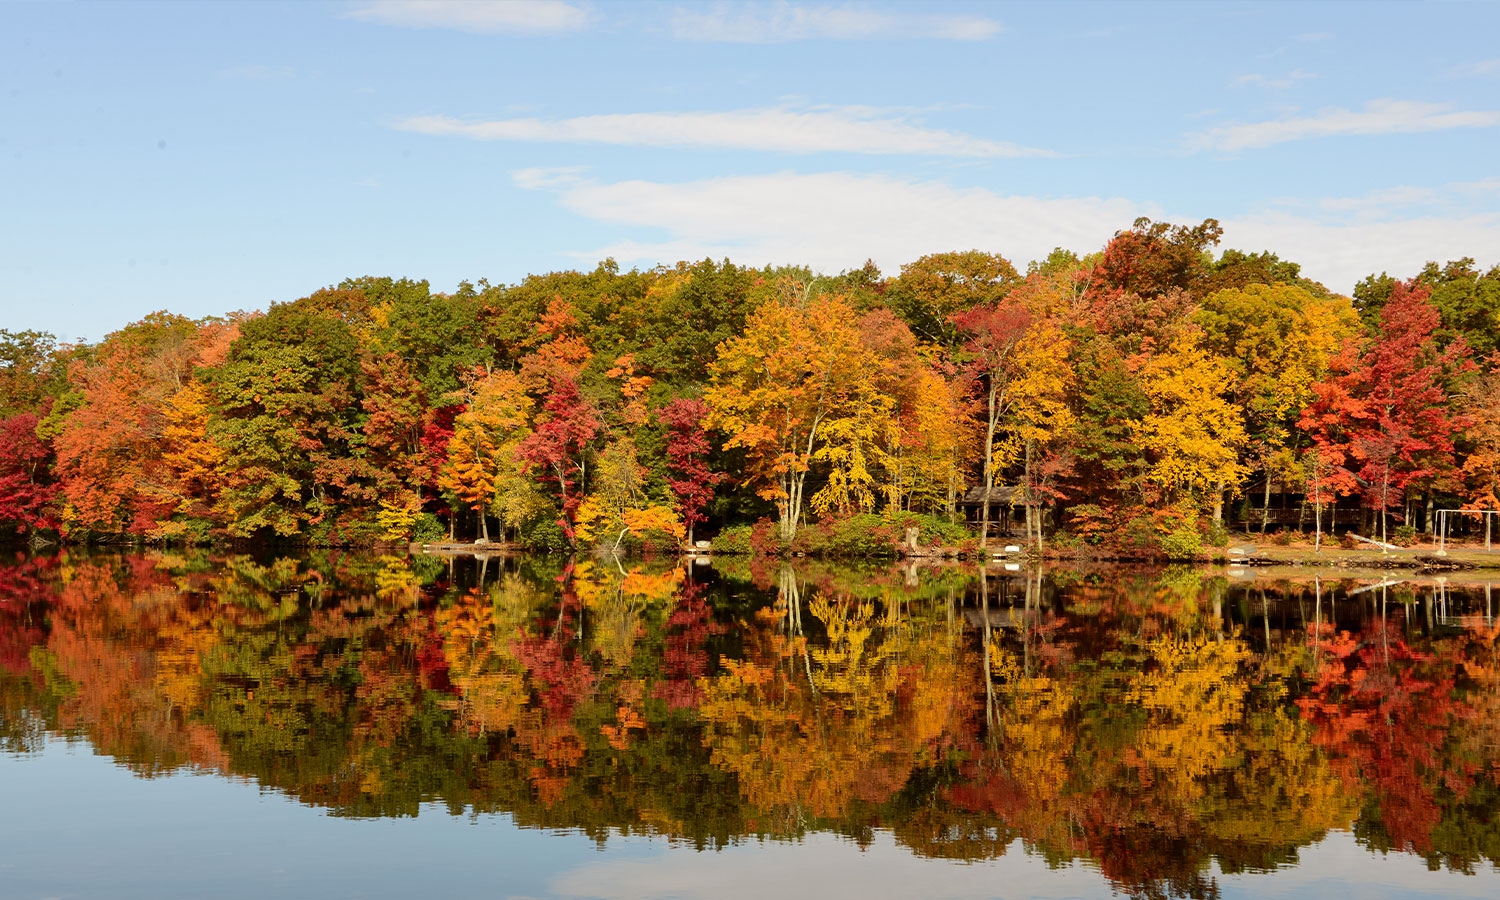 Fall brings brisk mornings, fall colors and … fish